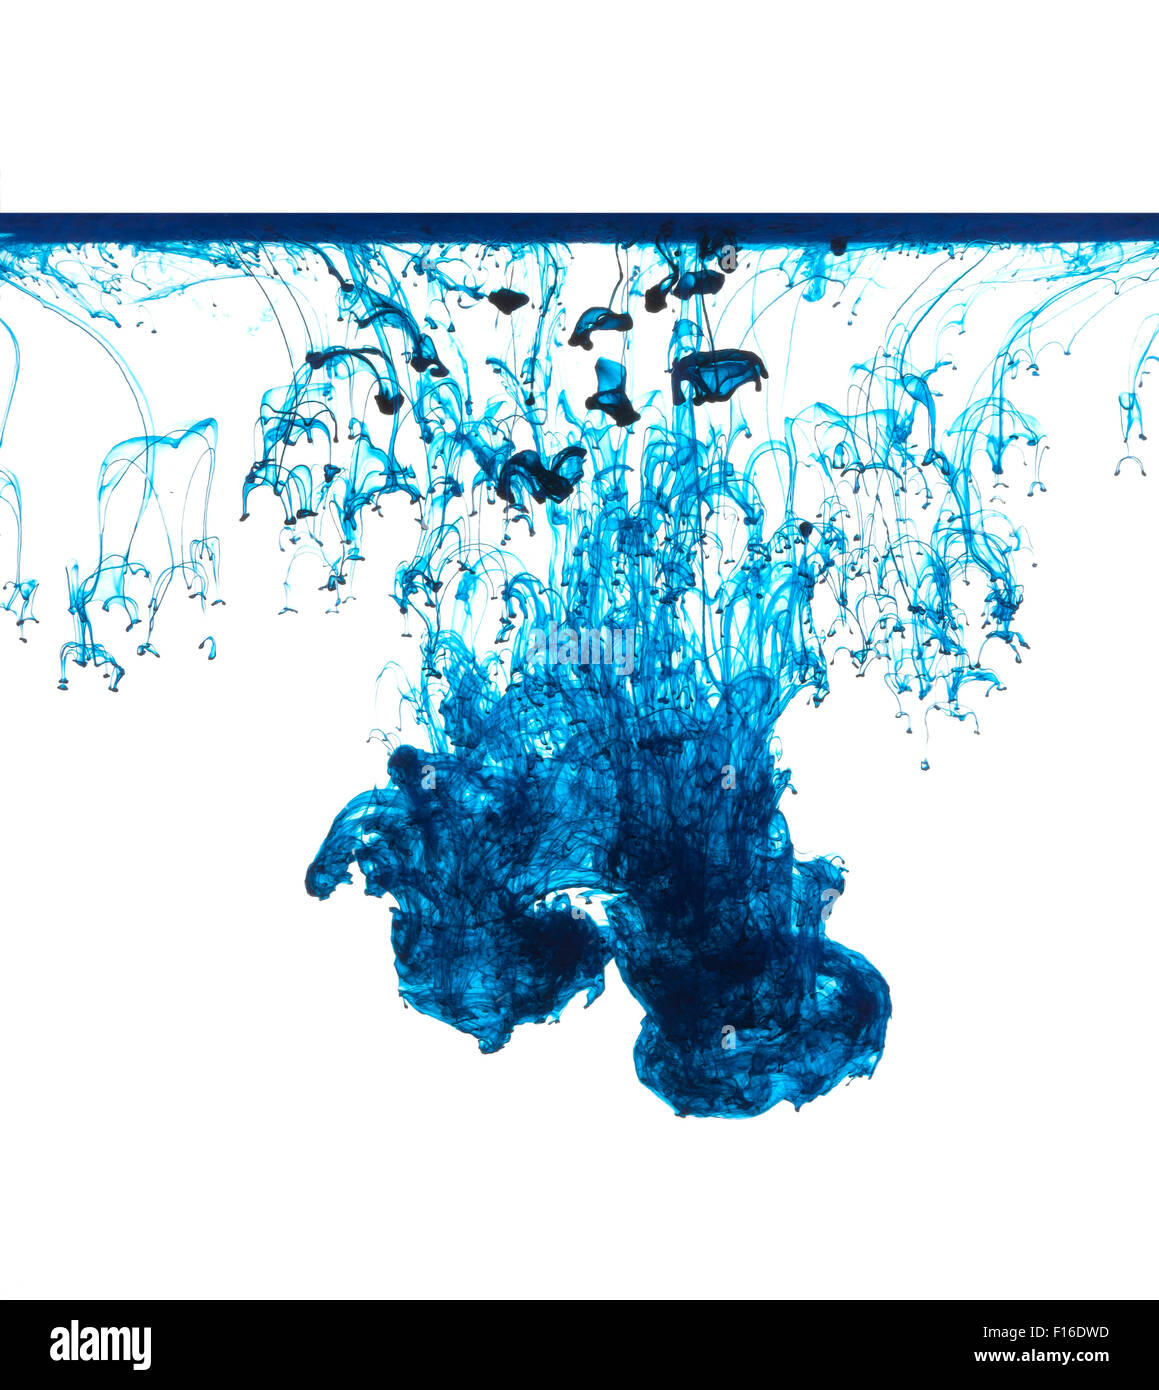 Inchiostro blu isolato in acqua Foto Stock